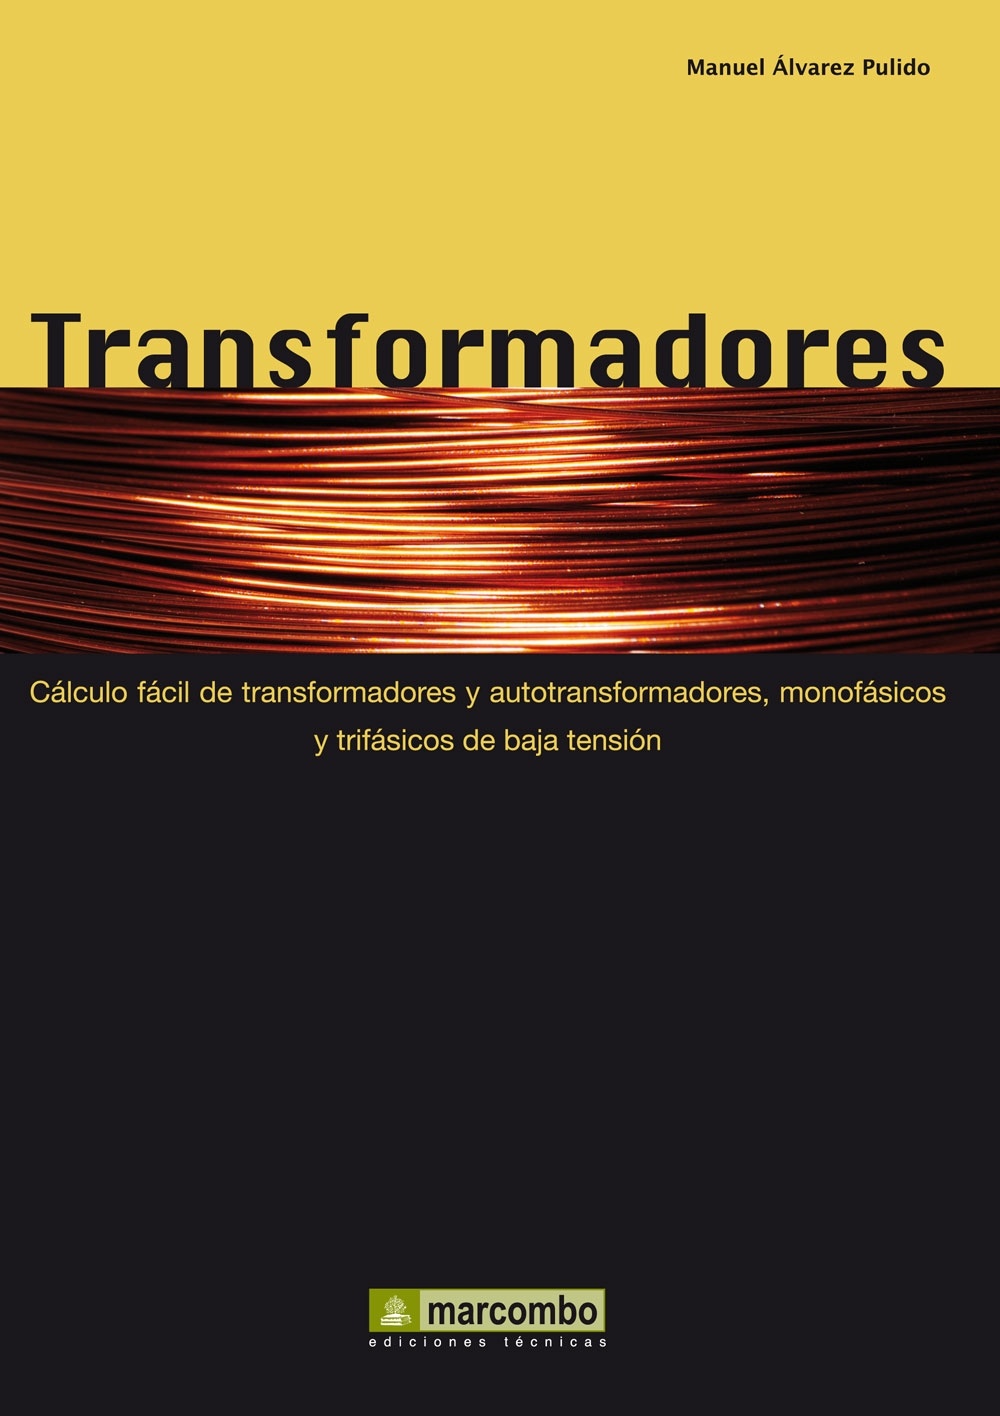 Transformadores "Cálculo fácil de transformadores y autotransformadores monofásic"